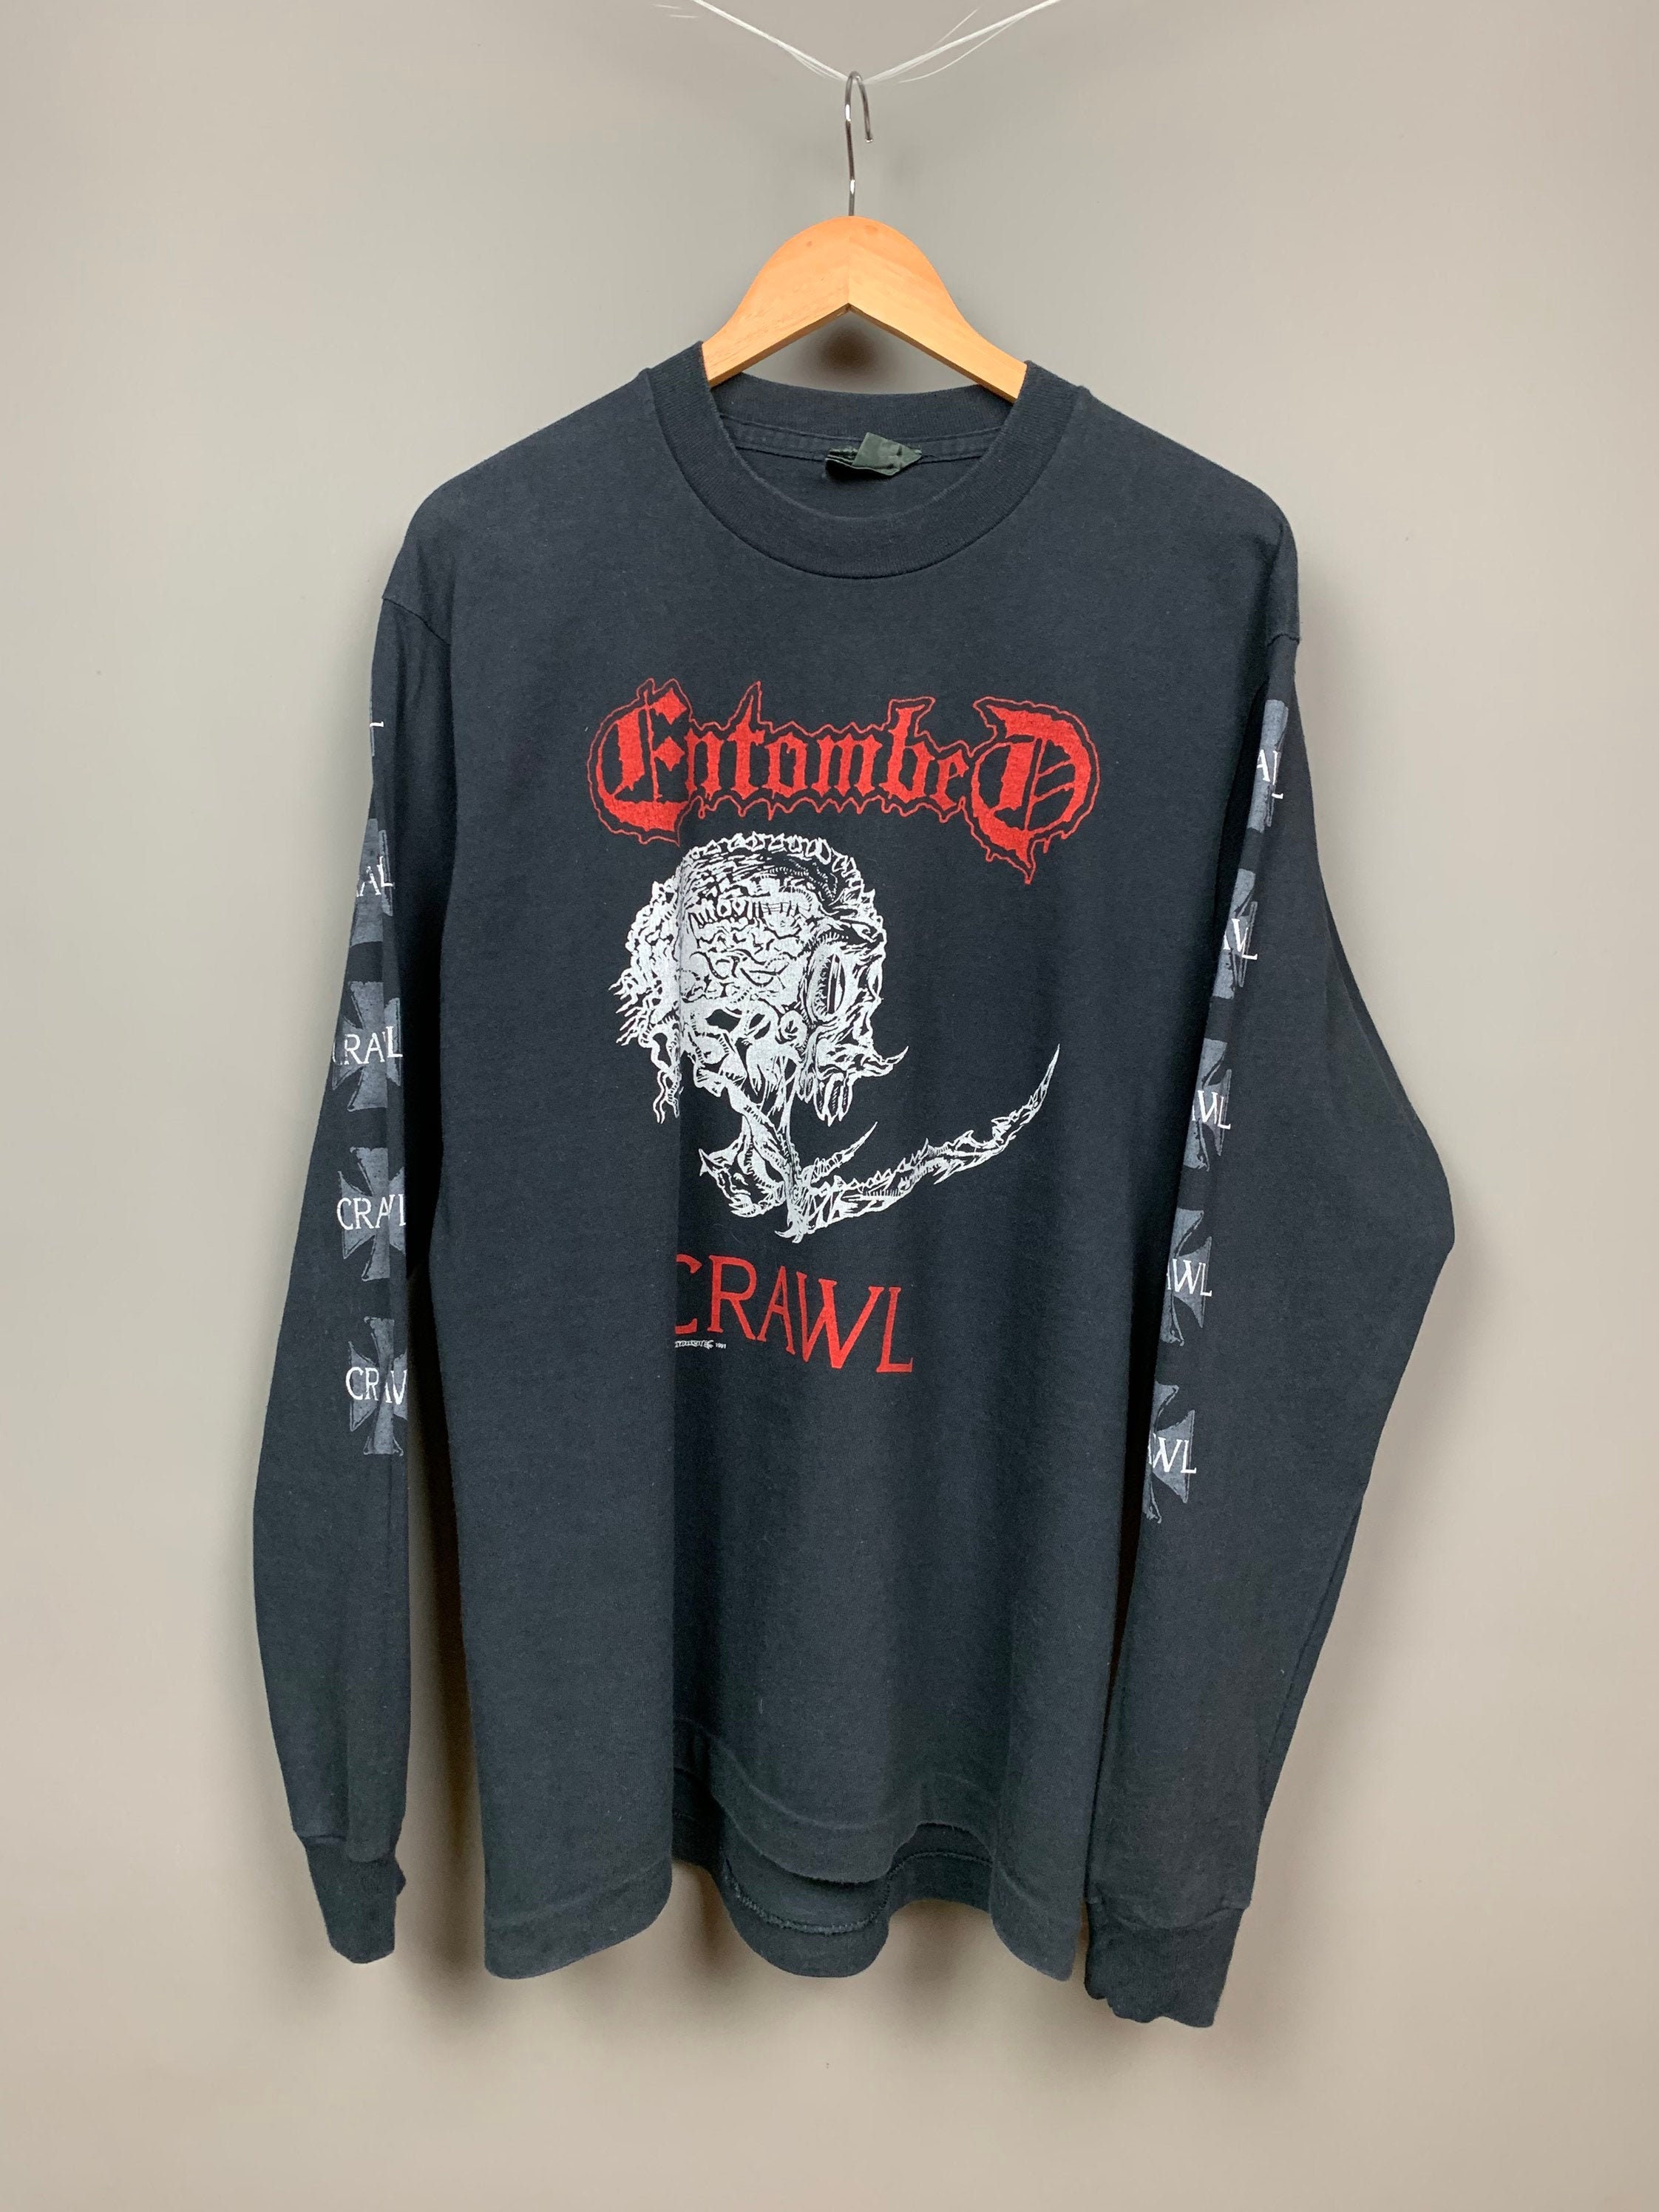 ENTOMBED 1991 CRAWL Vintage Metal Longsleeve Shirt / Extremely | Etsy